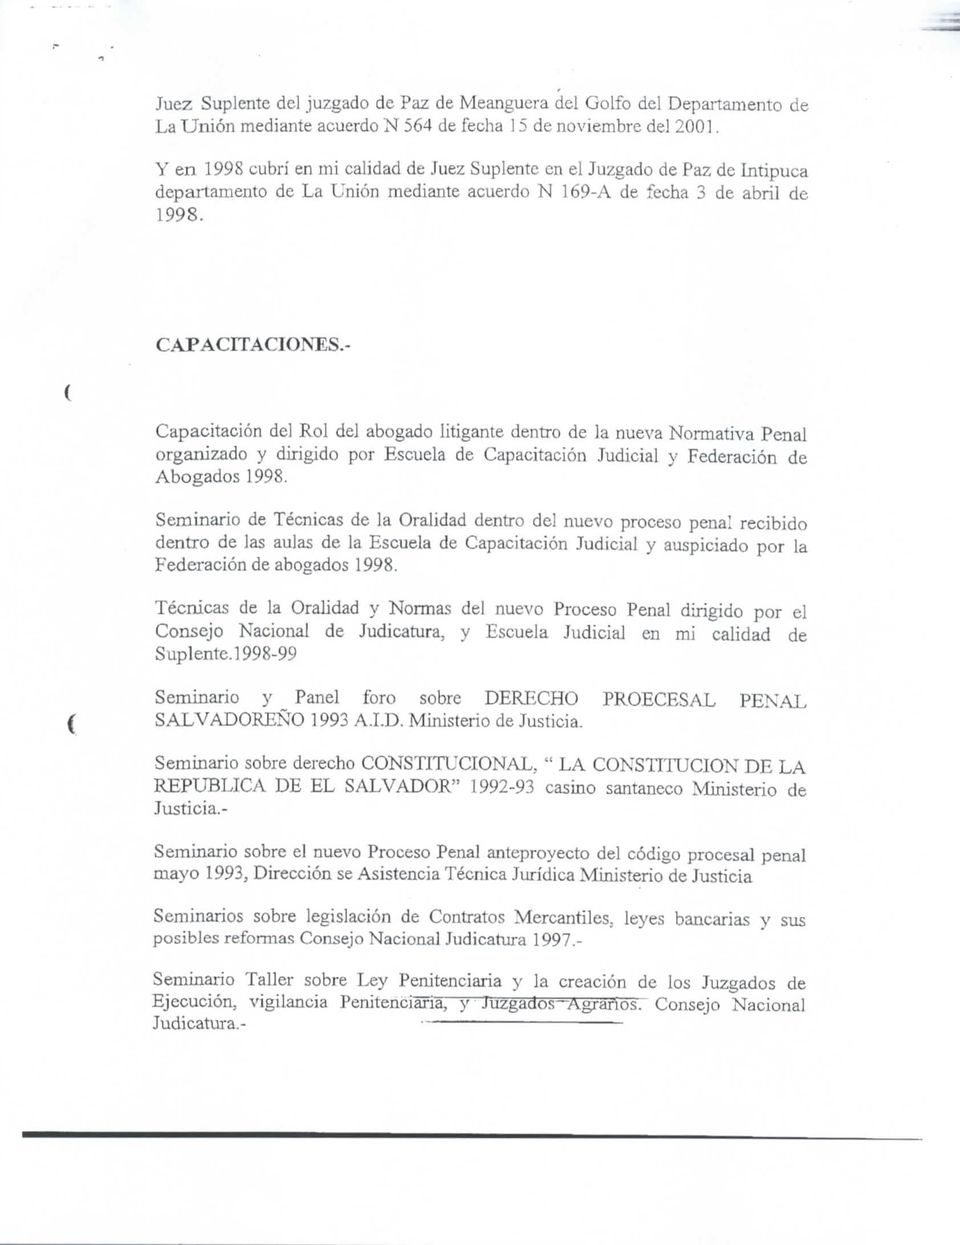 - Capacitación del Rol dej abogado litigante dentro de la nueva Normativa Penal organizado y dirigido por Escuela de Capacitación Judicial y Federación de Abogados 1998.